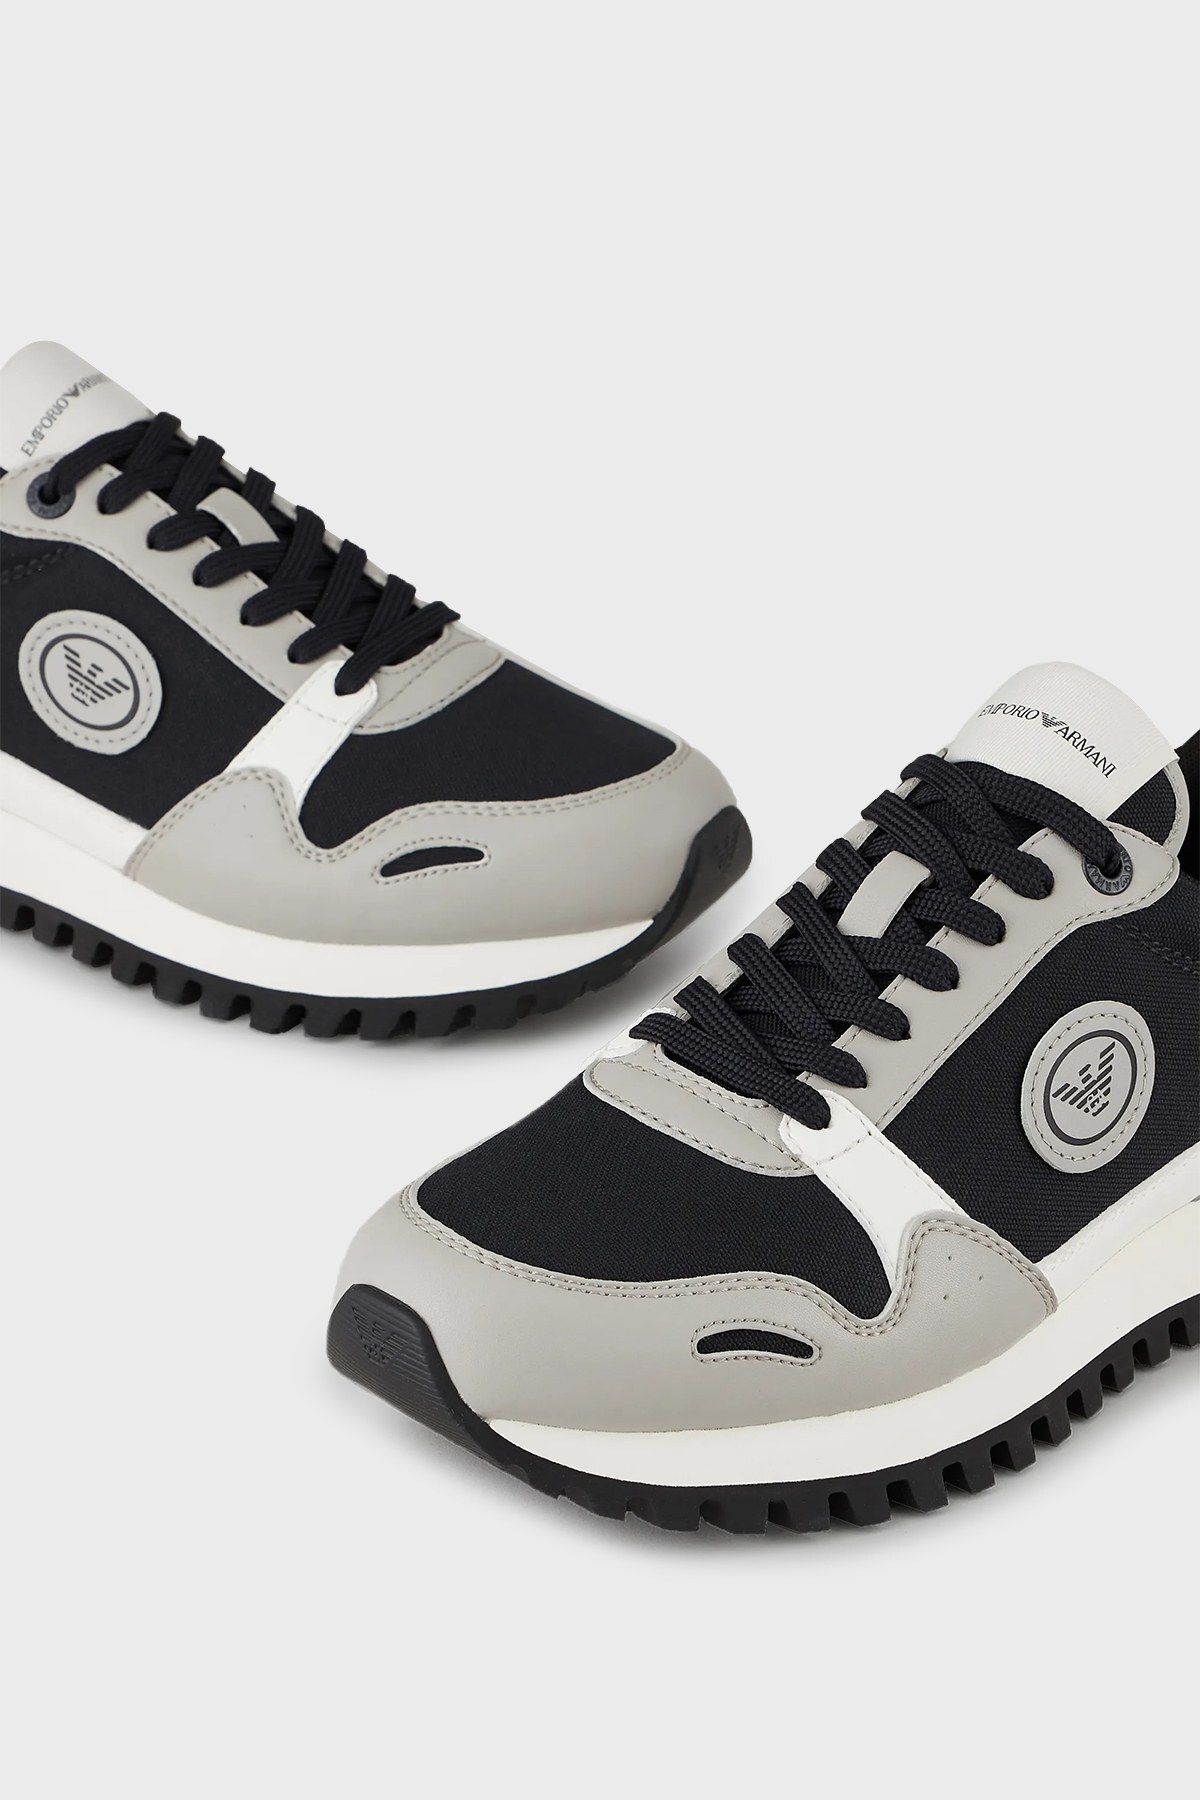 Emporio Armani Logolu Bağcıklı Sneaker Erkek Ayakkabı X4X536 XM999 Q471 LACİVERT-GRİ